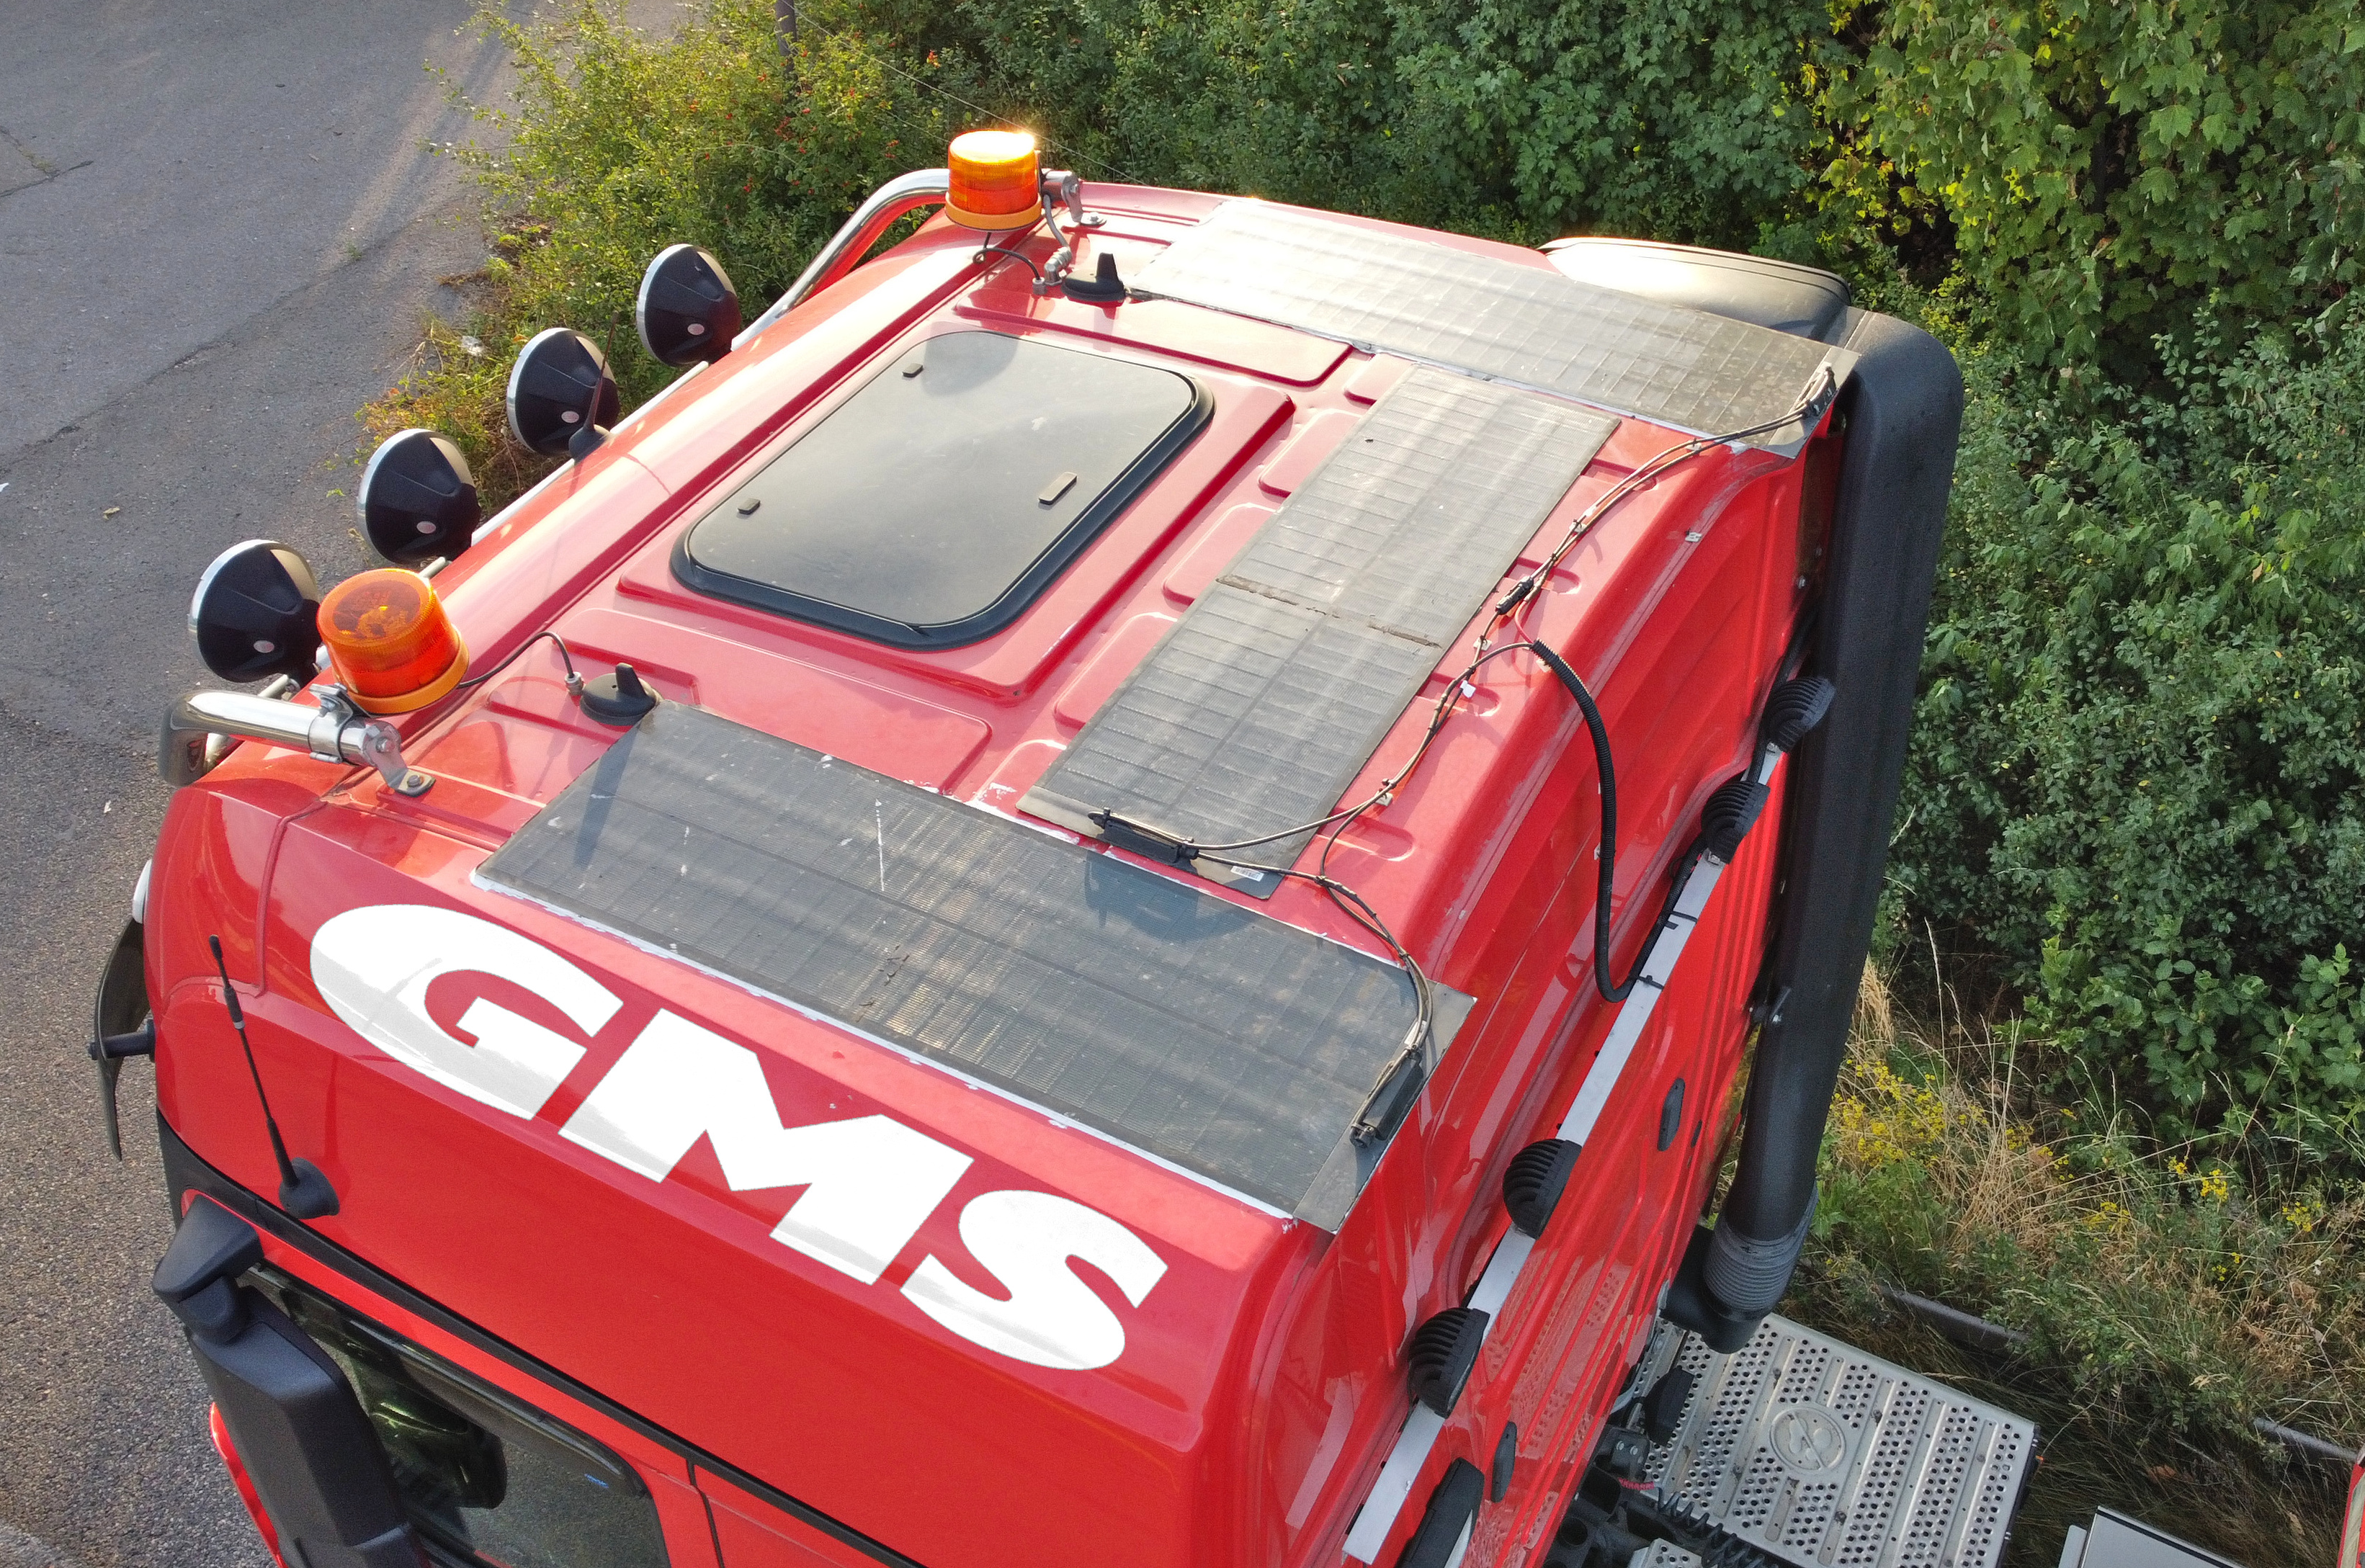 Zugfahrzeug von GMS mit PV-Modulen